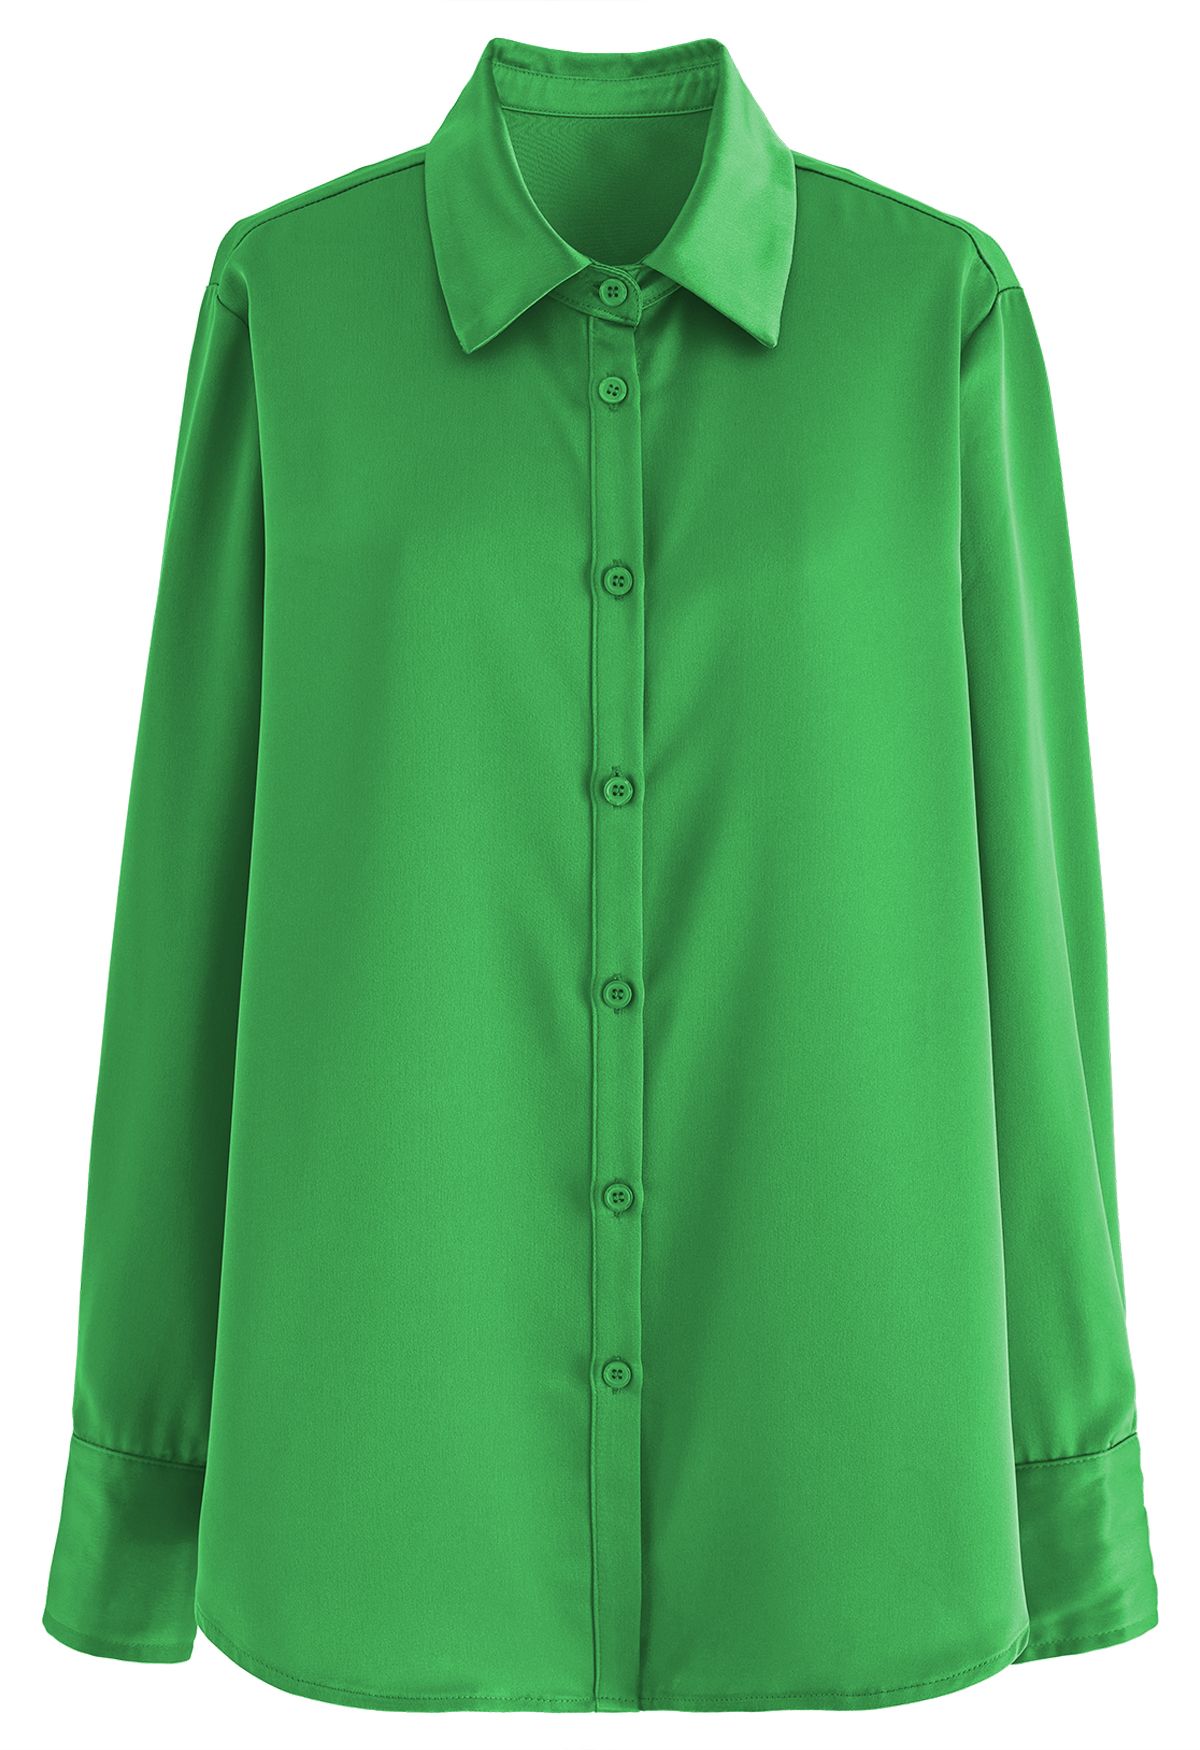 Satin Finish Button Up Shirt in Green